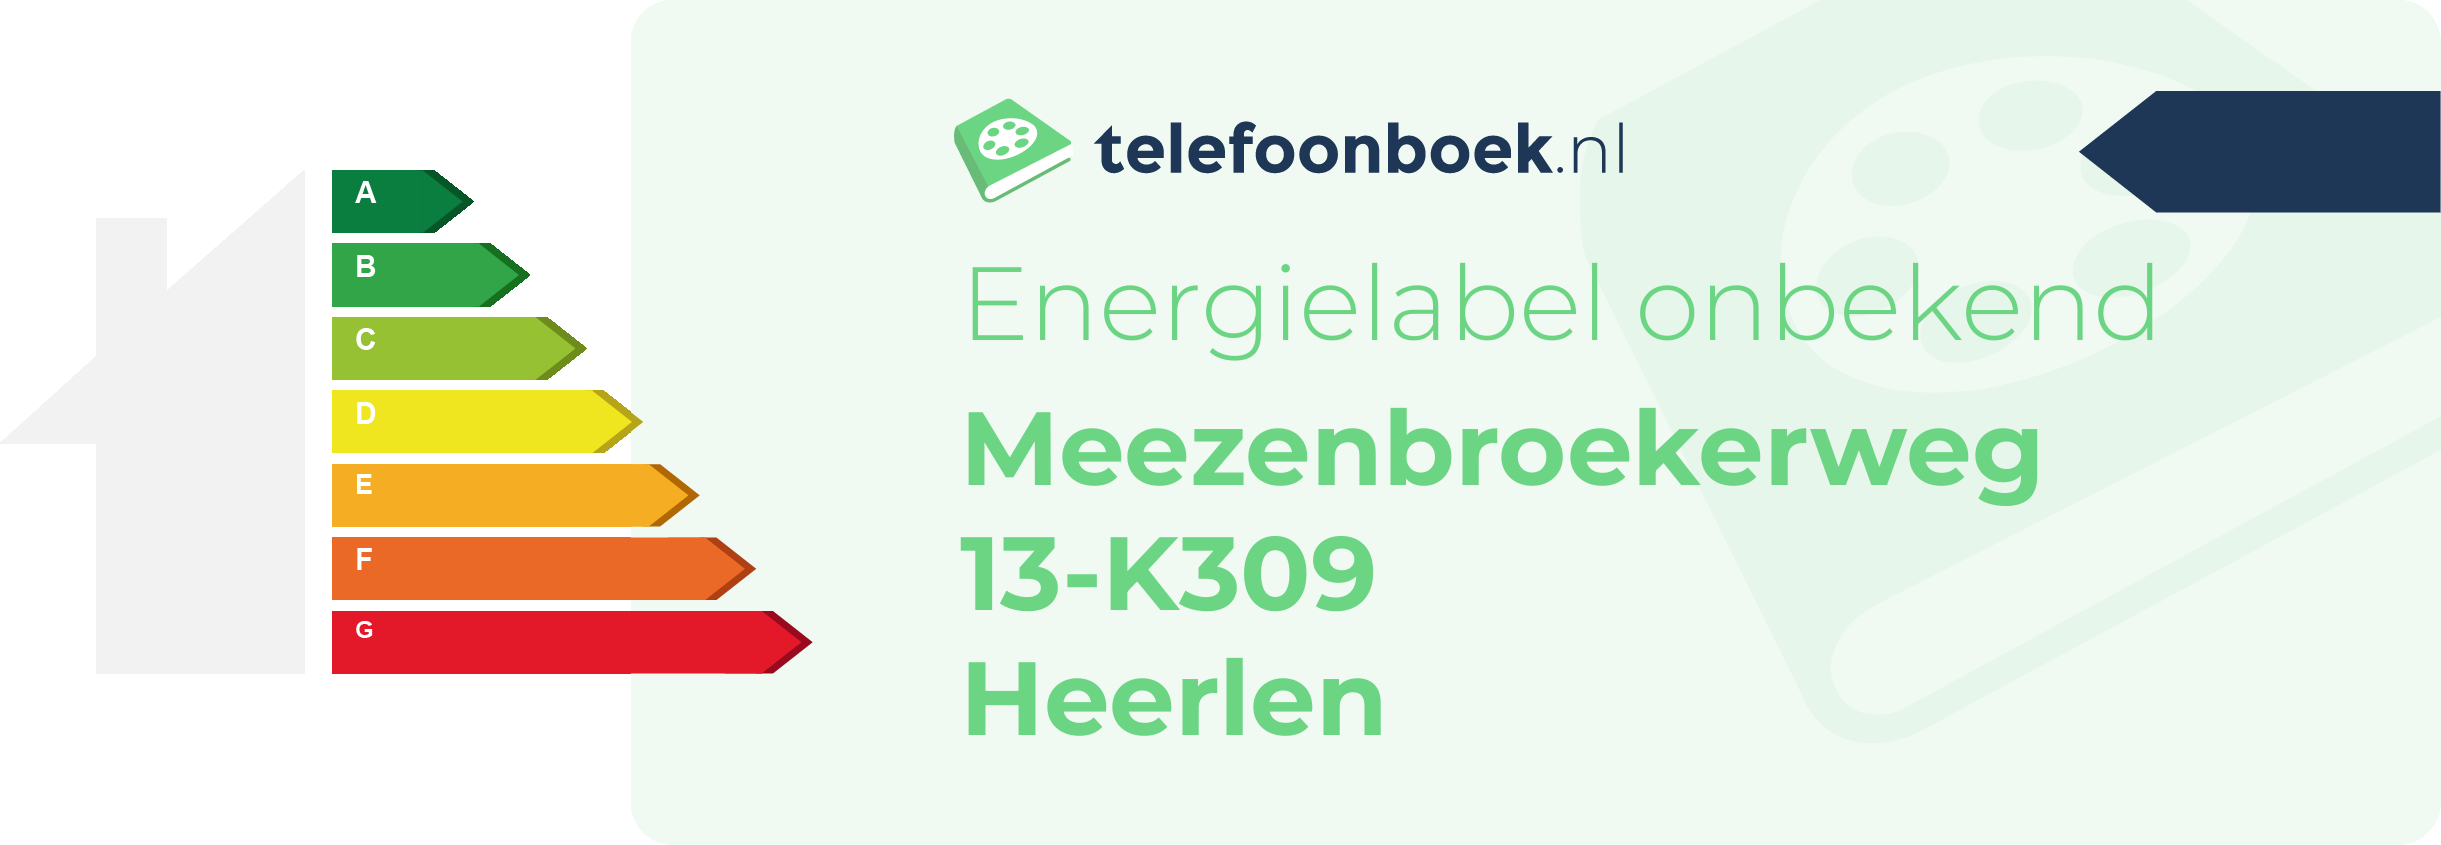 Energielabel Meezenbroekerweg 13-K309 Heerlen